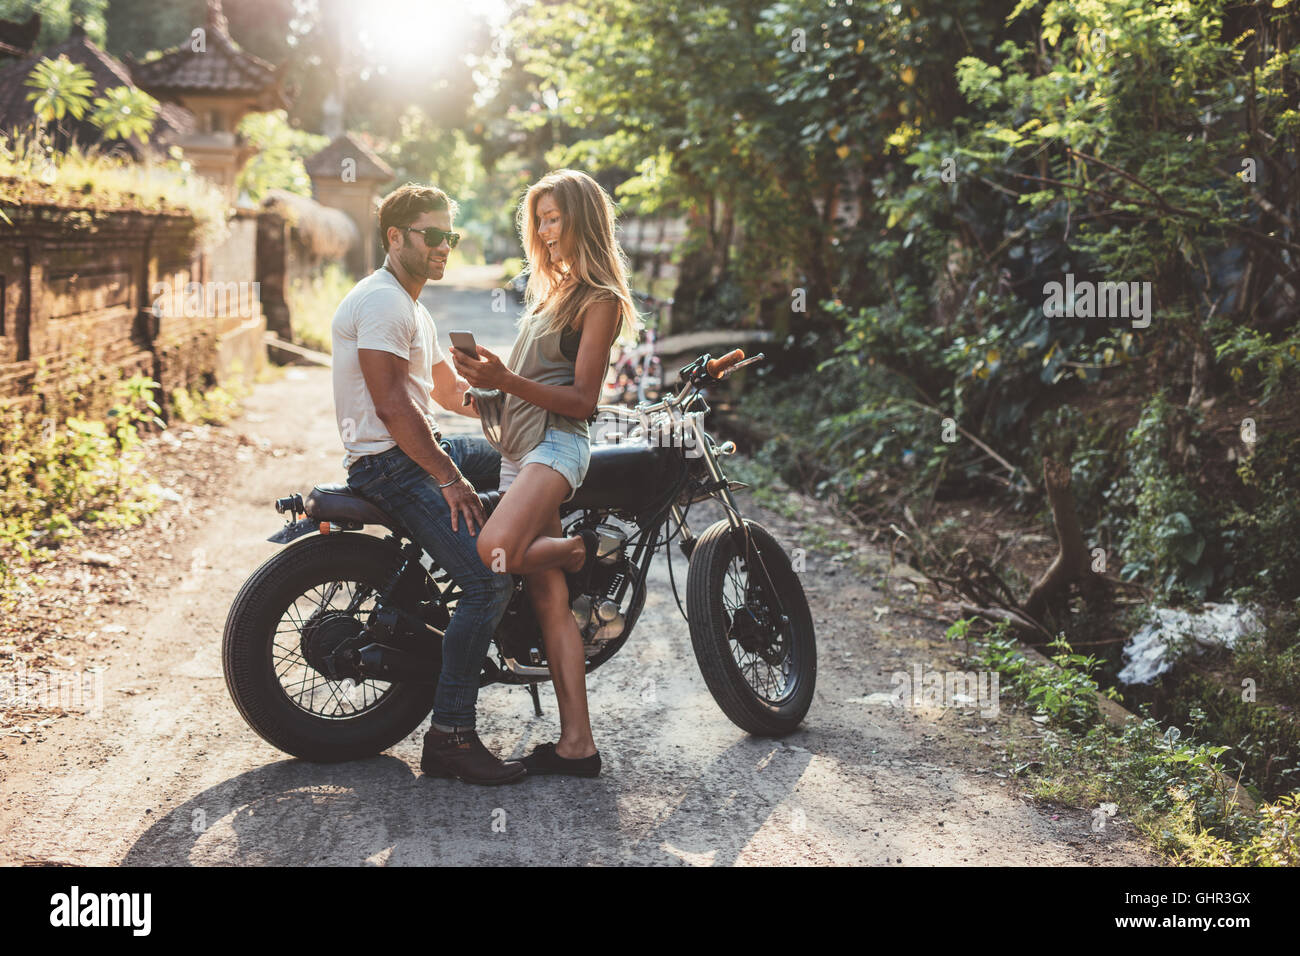 Im Freien Schuss fröhlichen jungen Paares mit Motorrad auf Landstraße. Mann mit Frau, die eine Smartphone auf dem Motorrad sitzt. Stockfoto